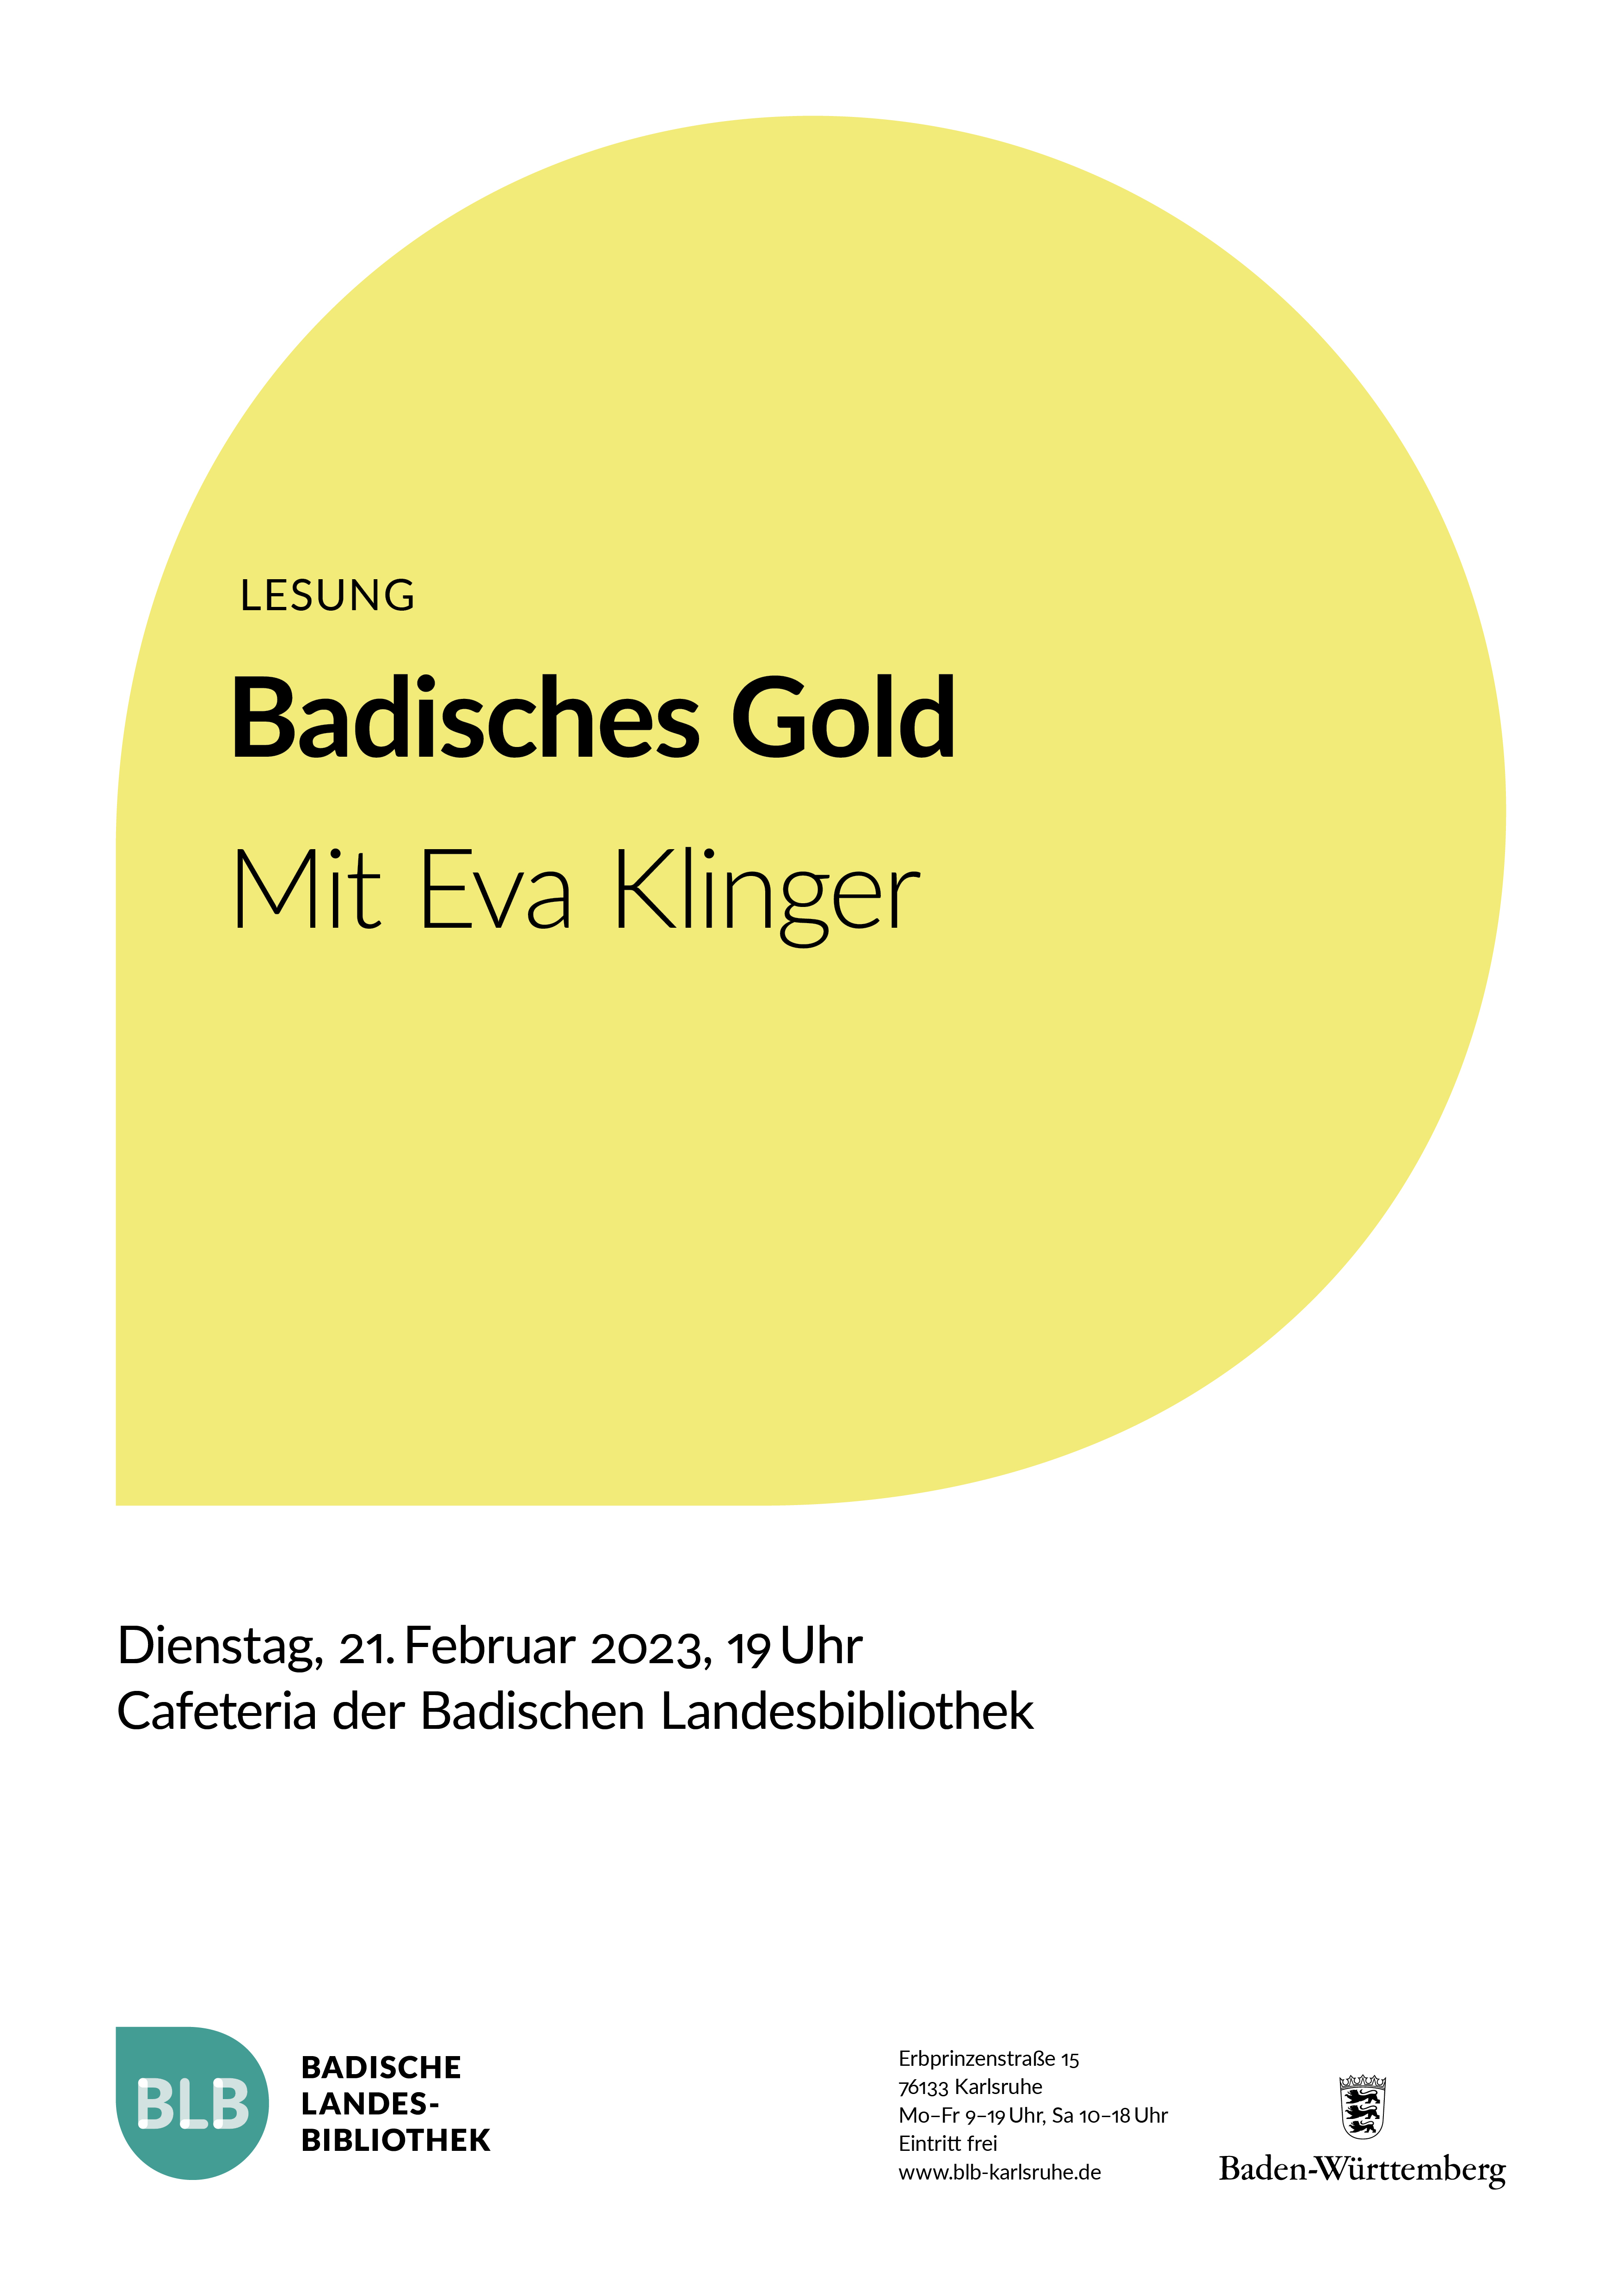 Zu sehen ist ein gelbes Monogon mit der Aufschrift: "Badisches Gold." Die Lesung findet mit Eva Klinger am Dienstag, den 21. Februar 2023 um 19 Uhr in der Cafeteria der Badischen Landesbibliothek Karlsruhe statt. 